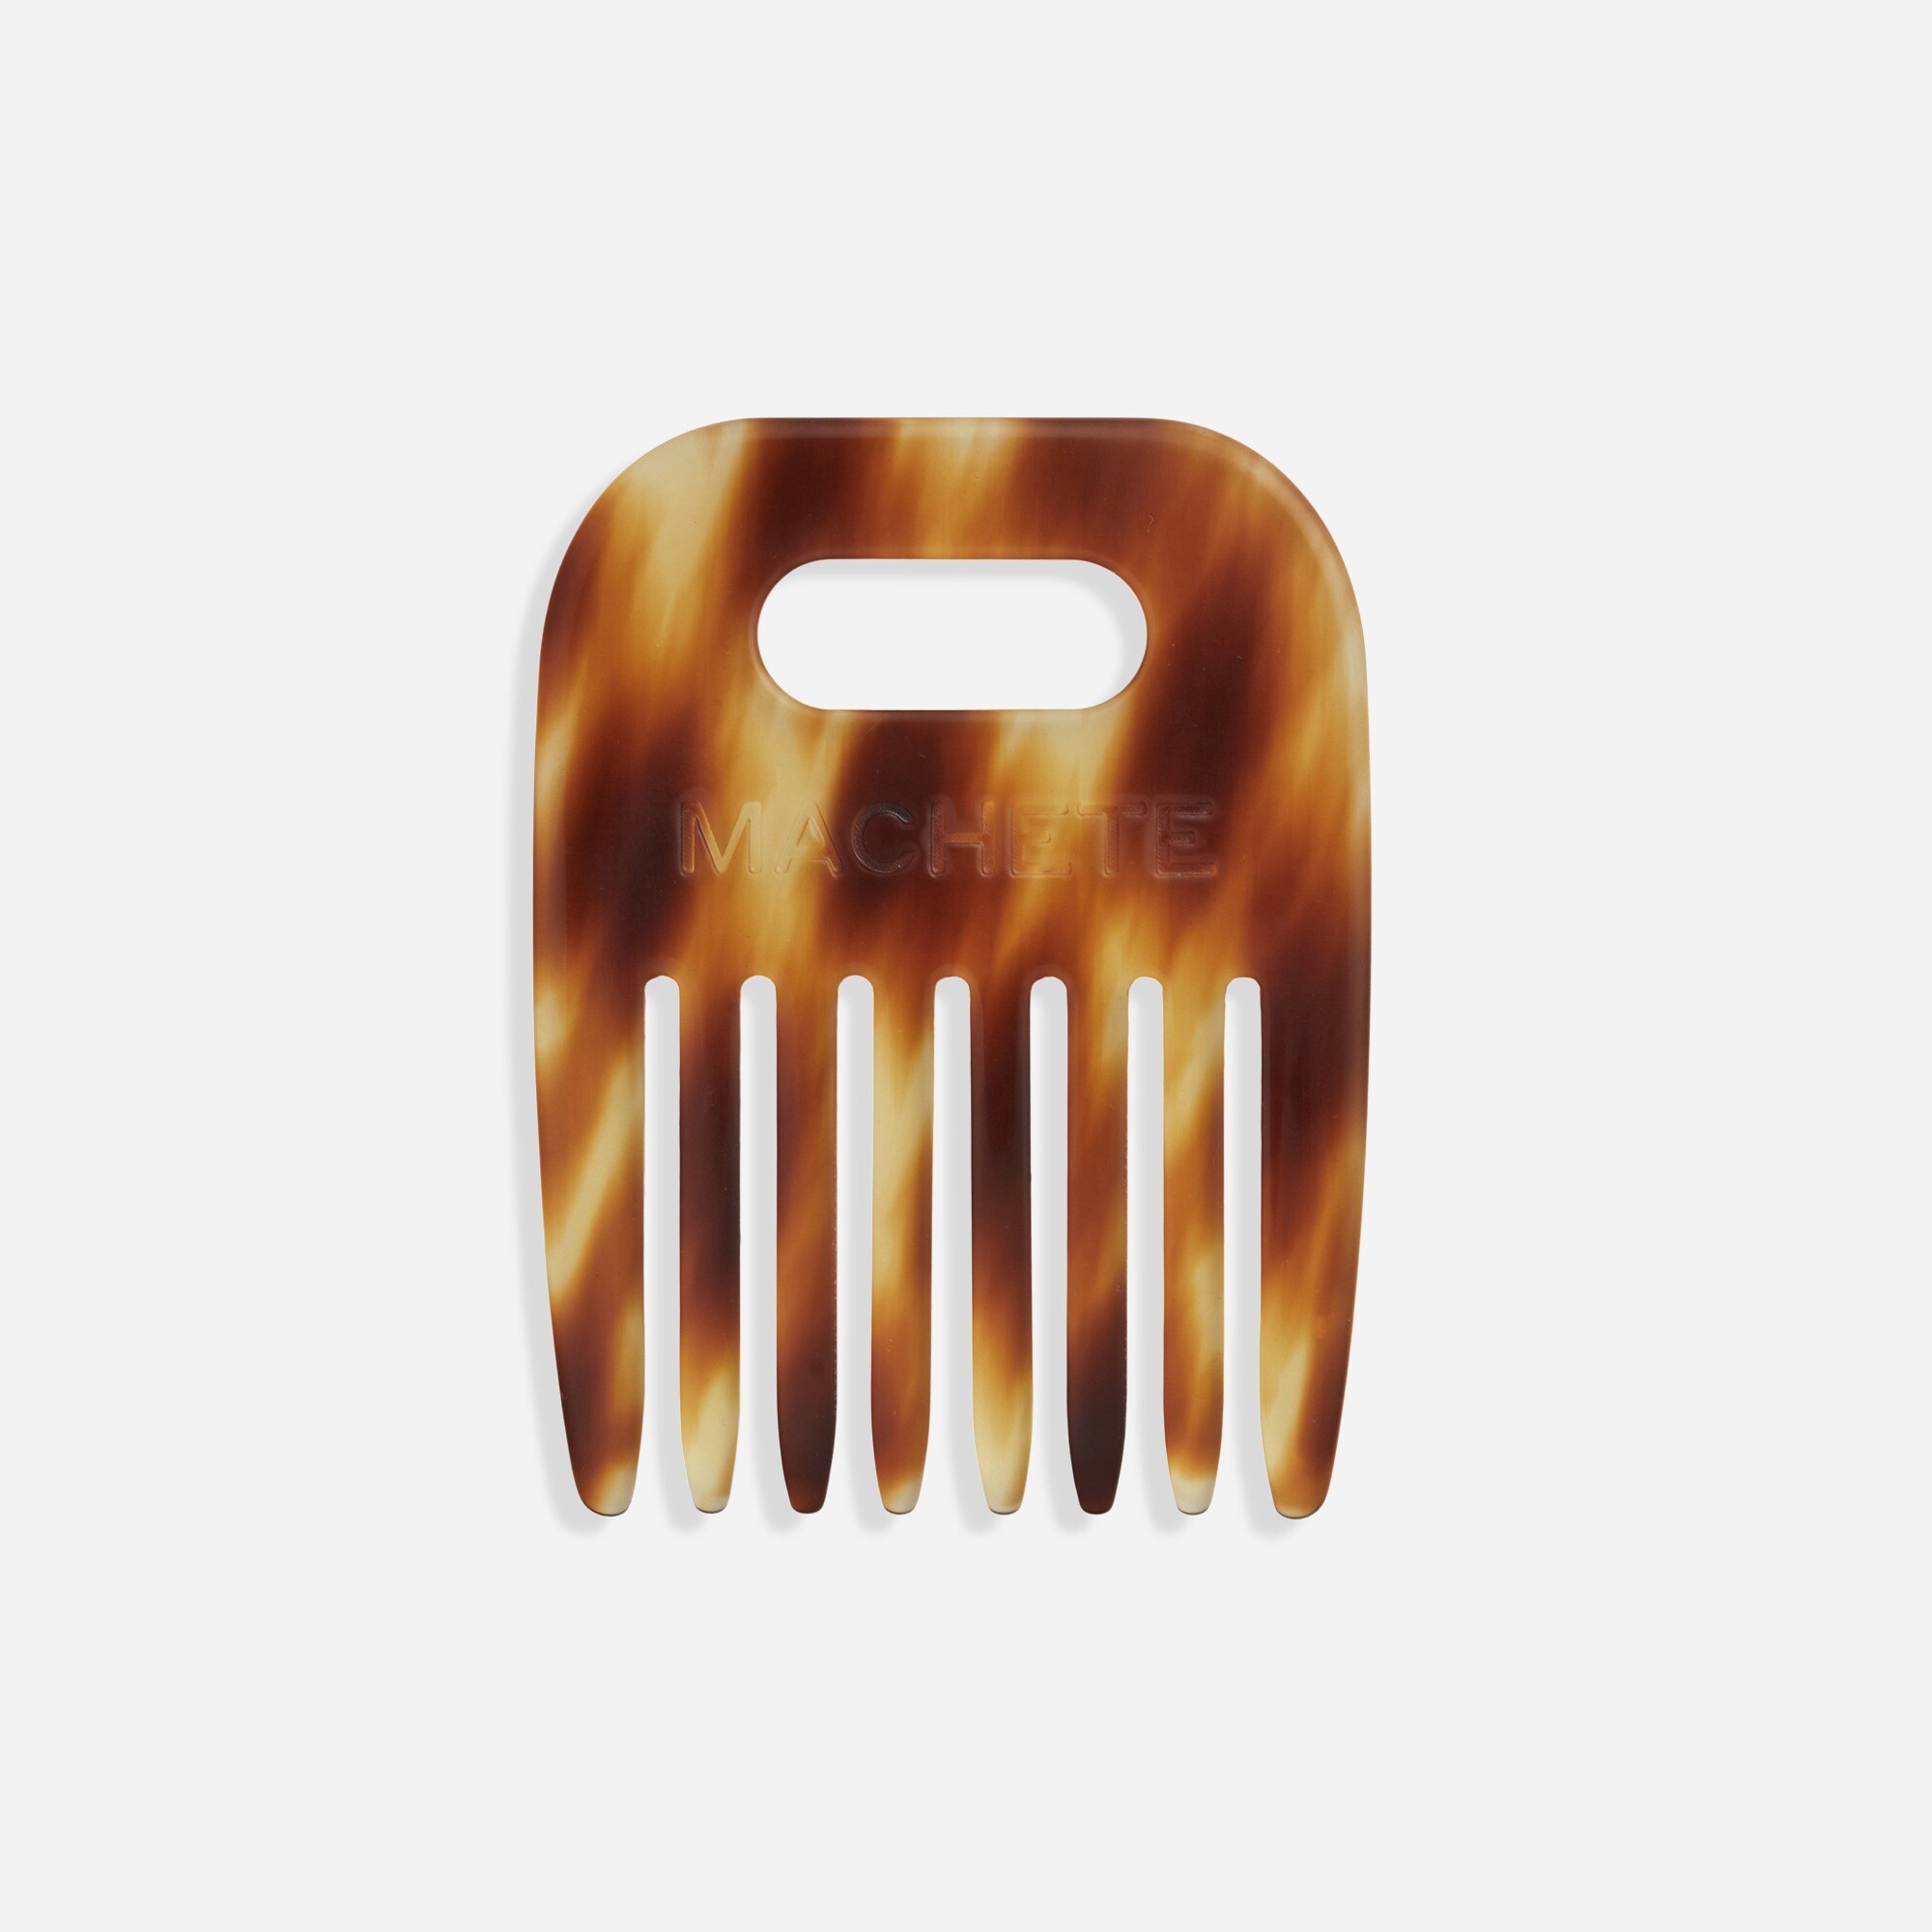  MACHETE No. 4 comb